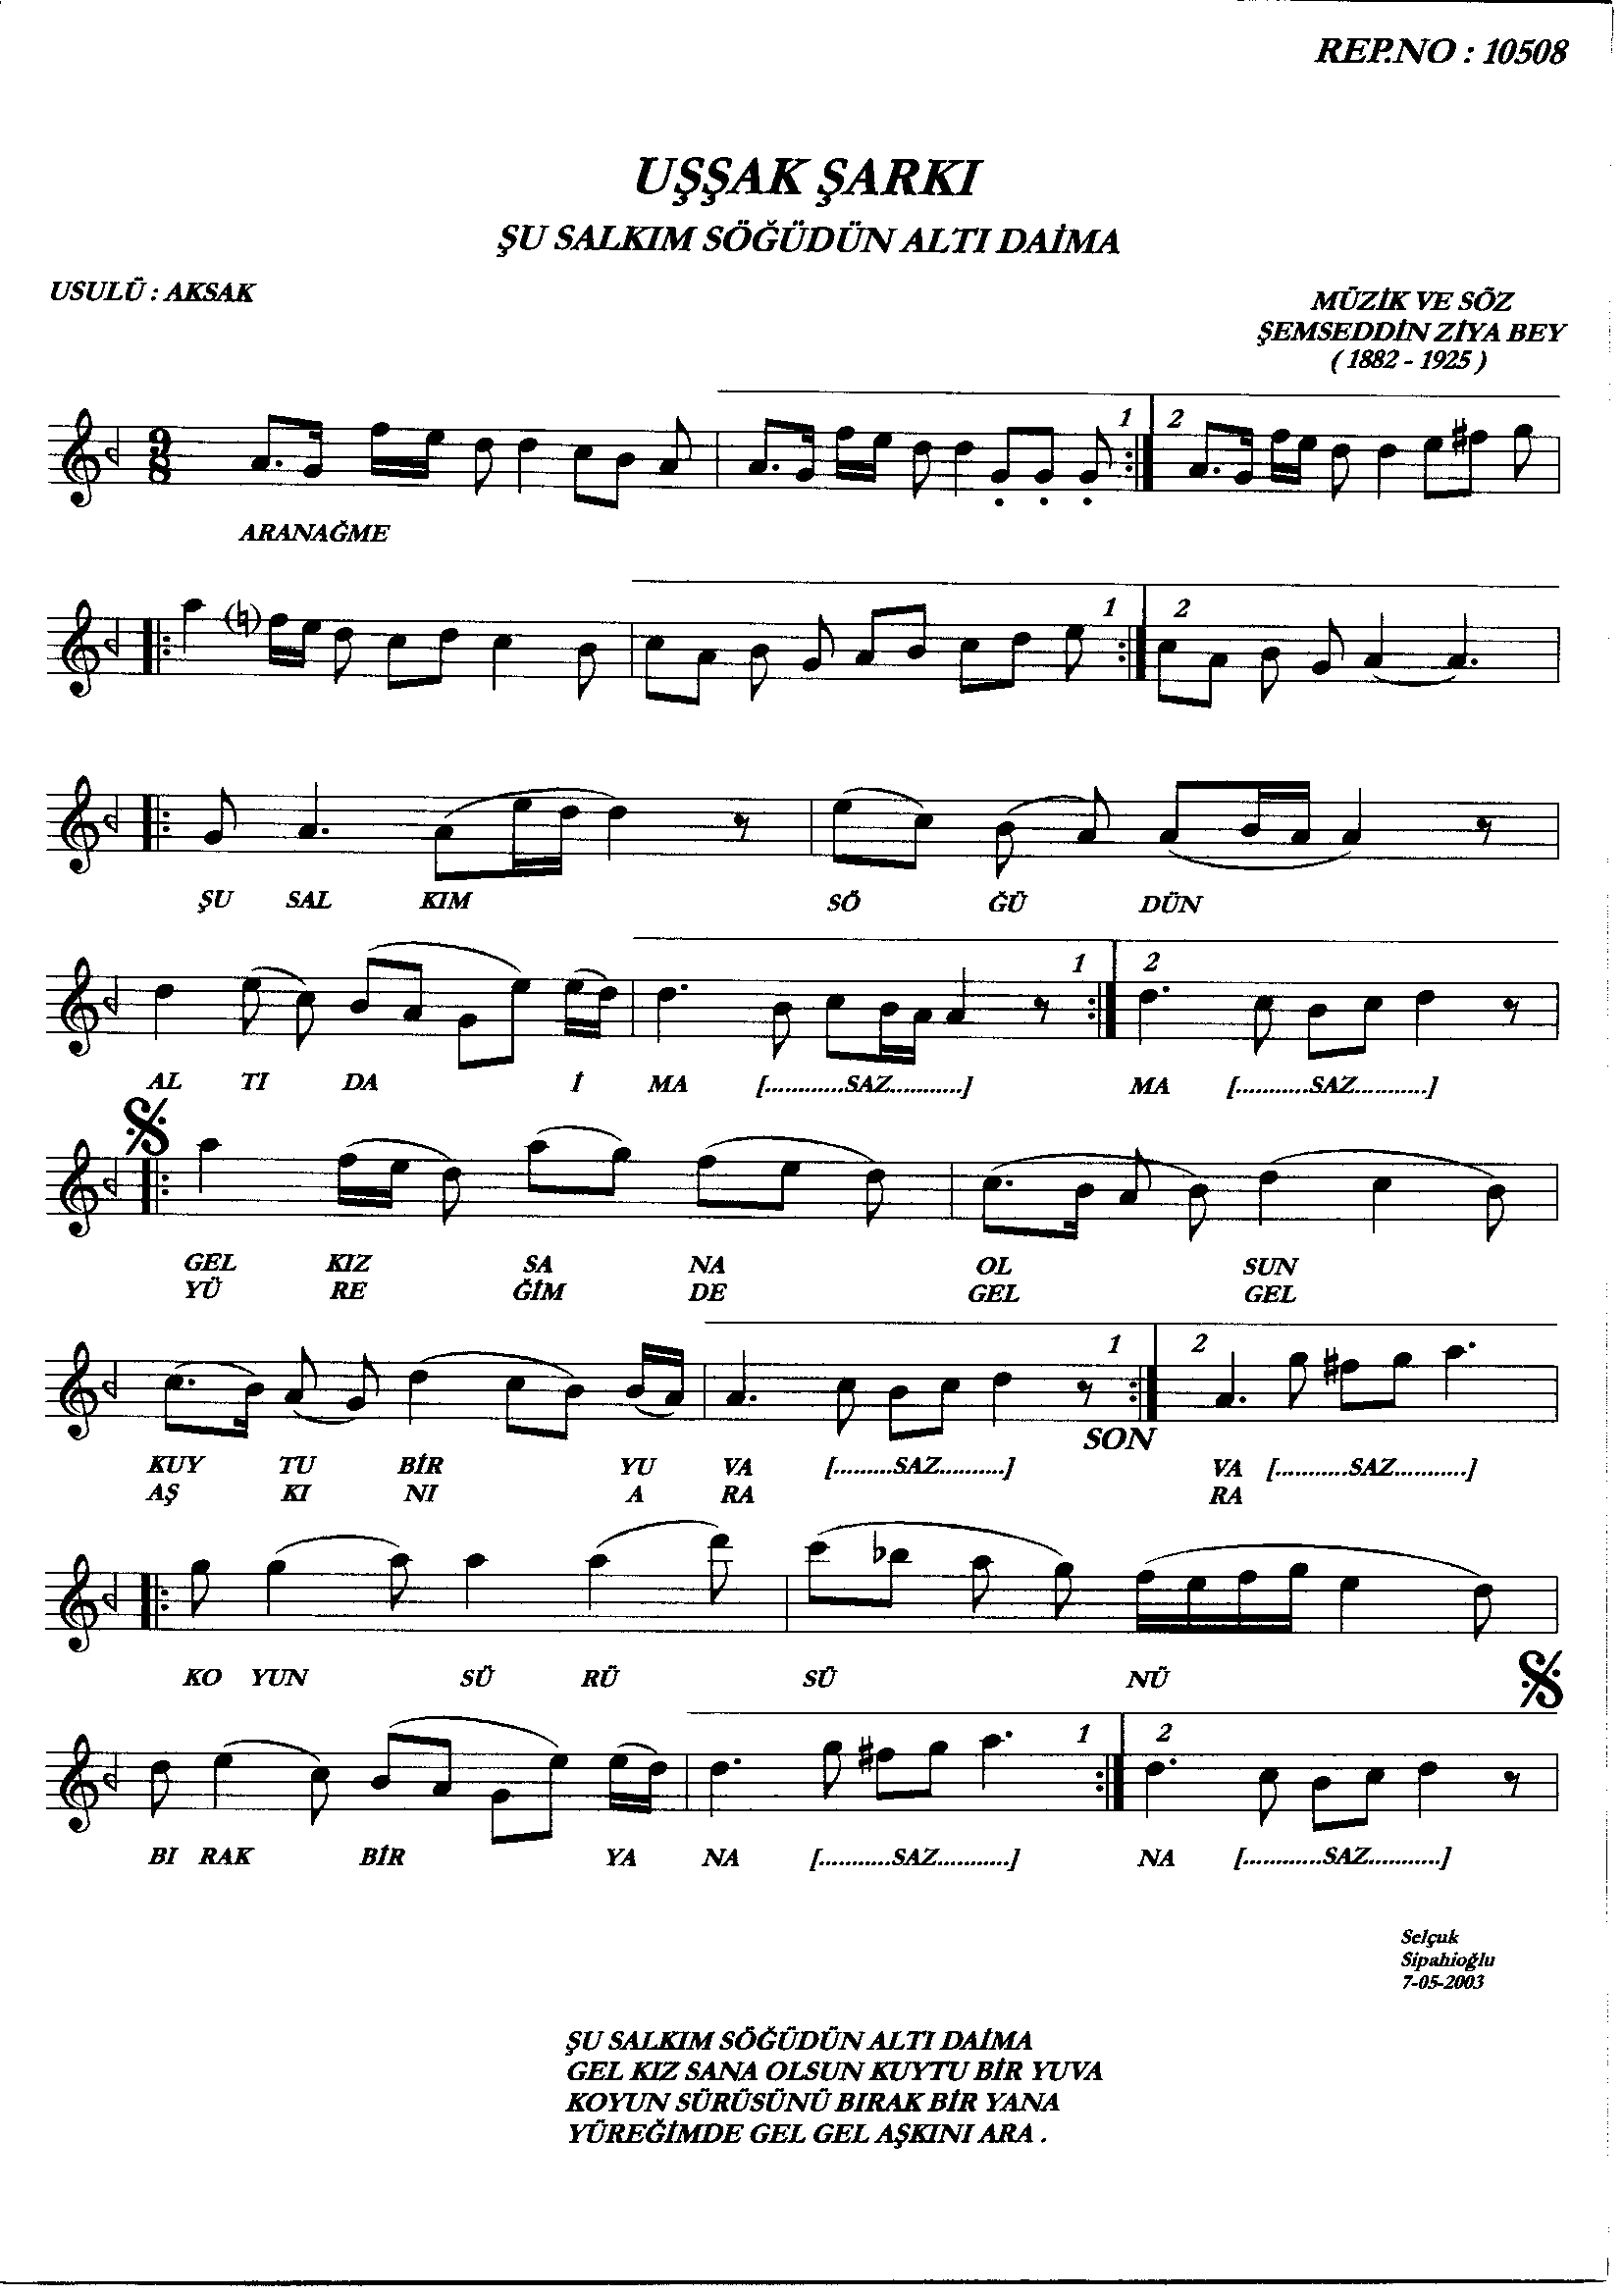 Uşşak - Şarkı - Şemsettin Ziyâ Bey - Sayfa 1